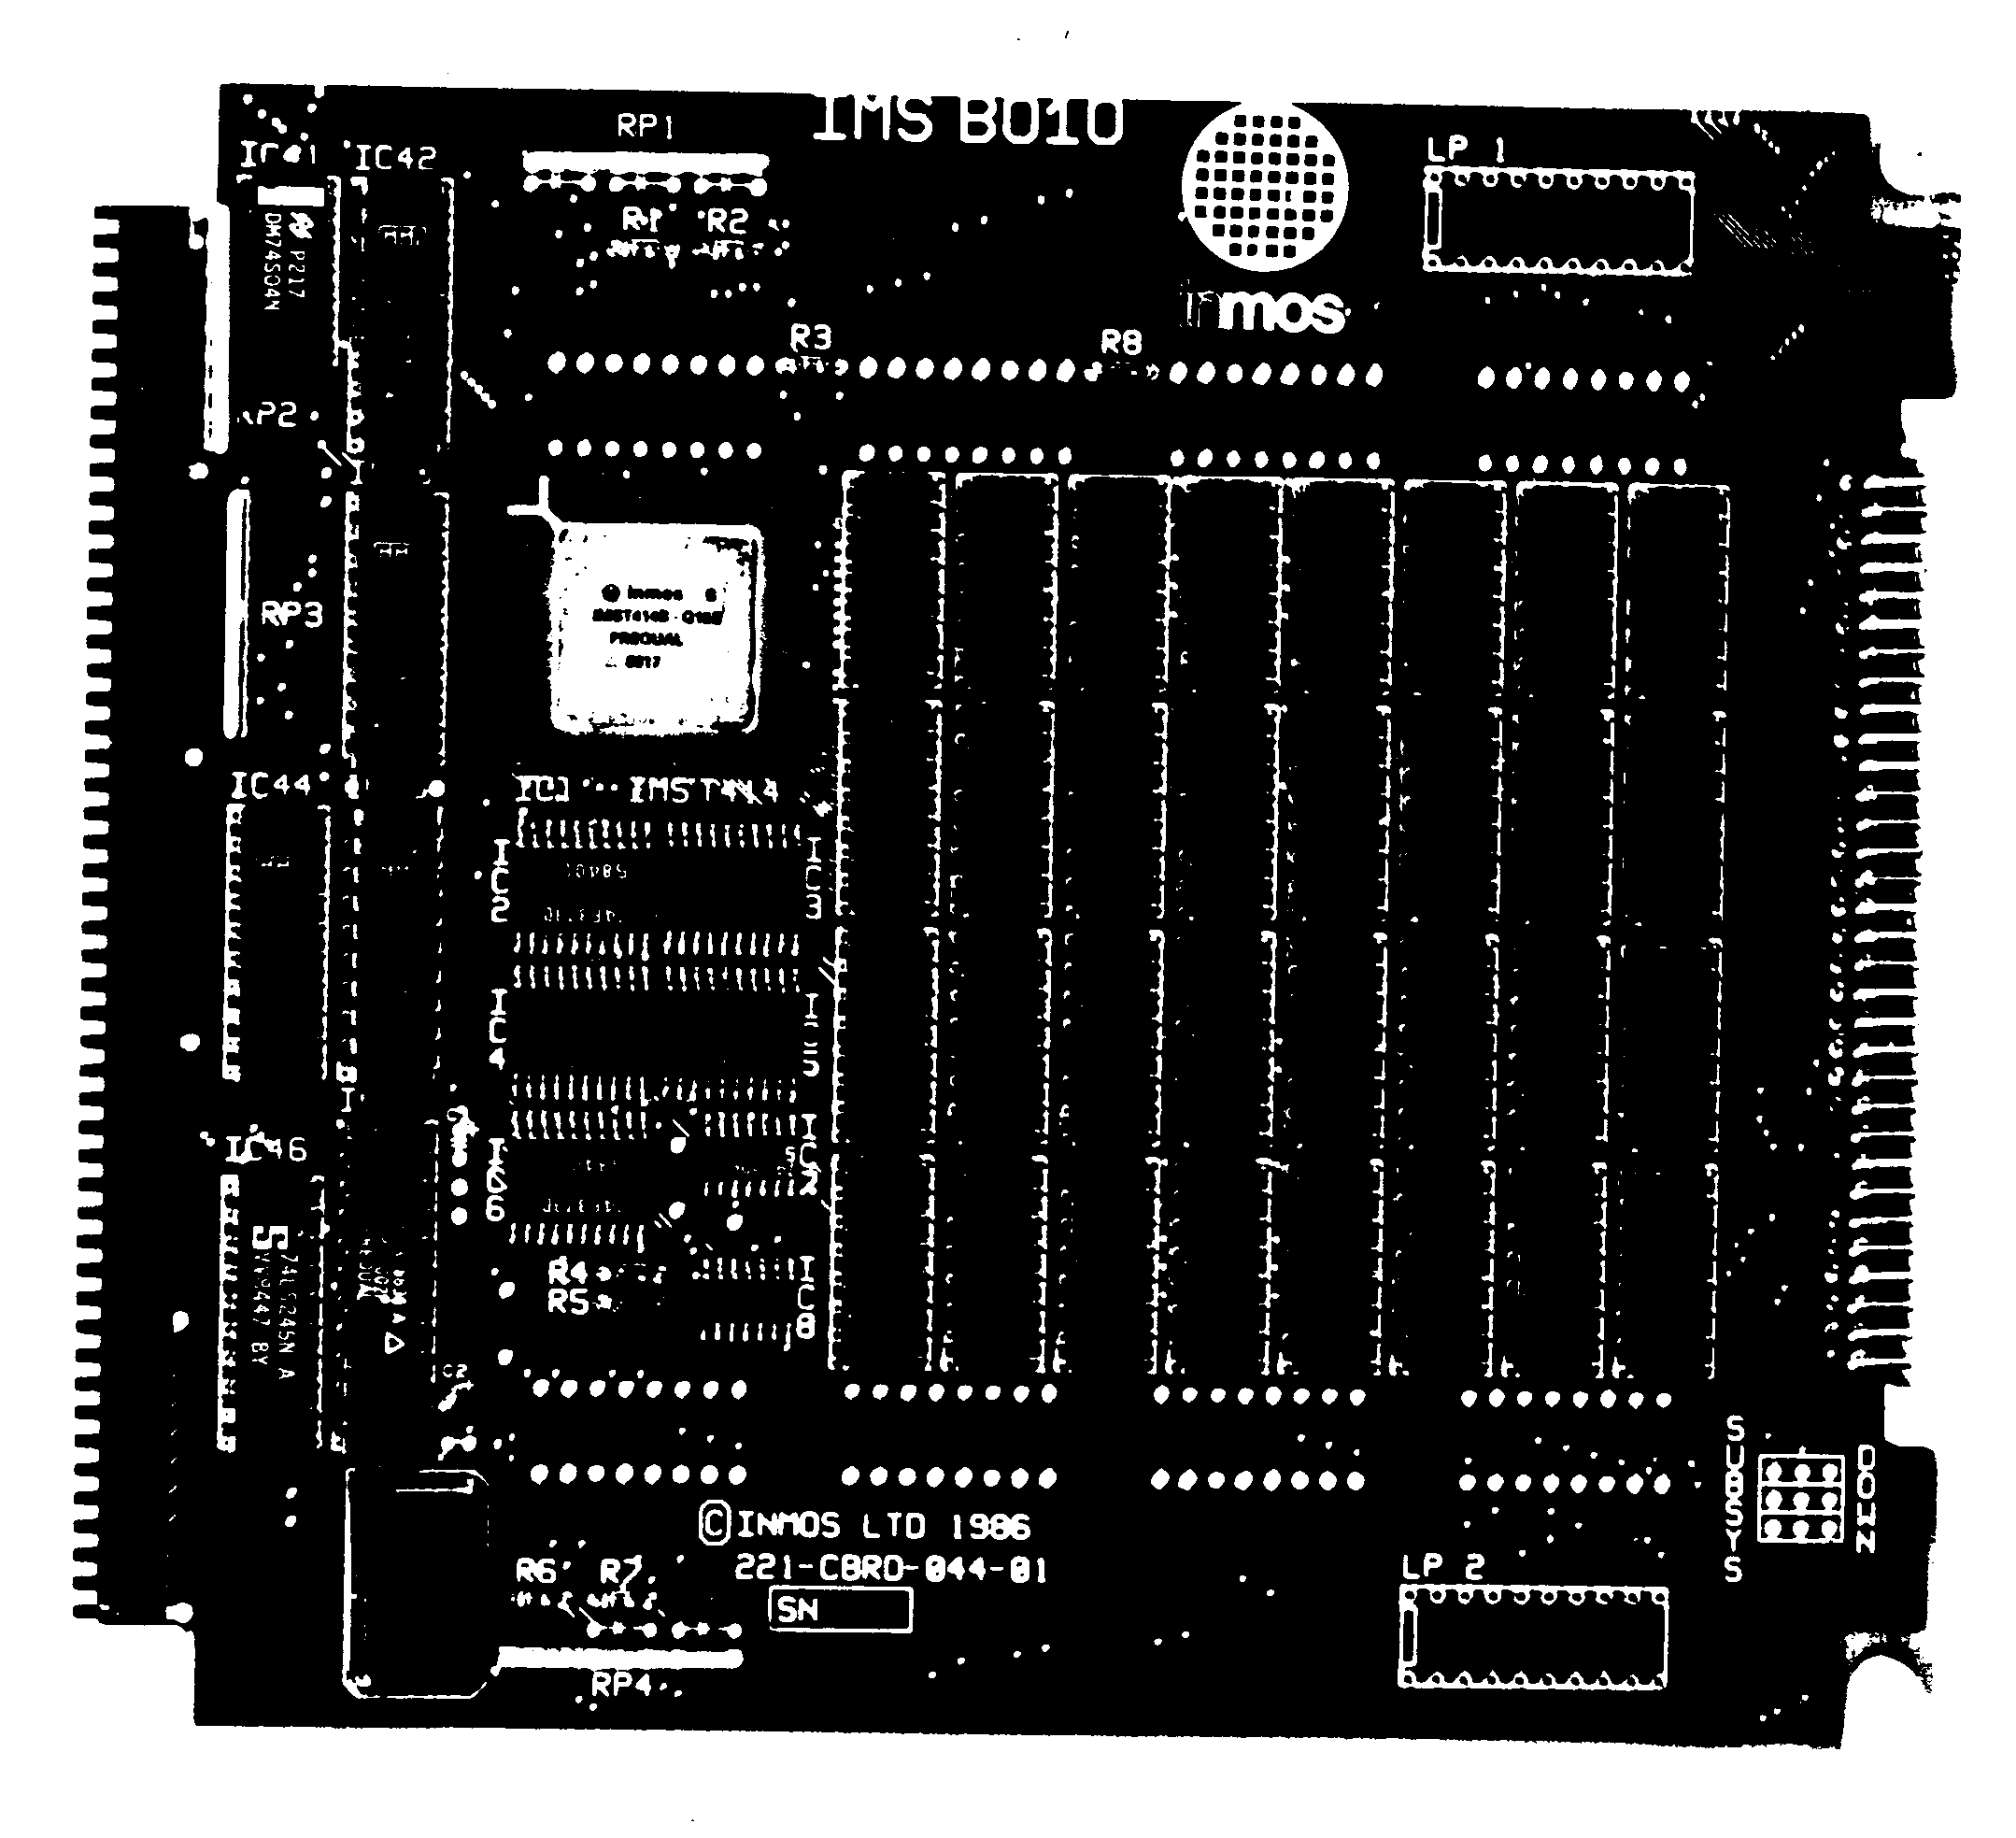 The IMS B010 NEC PC add-in
board